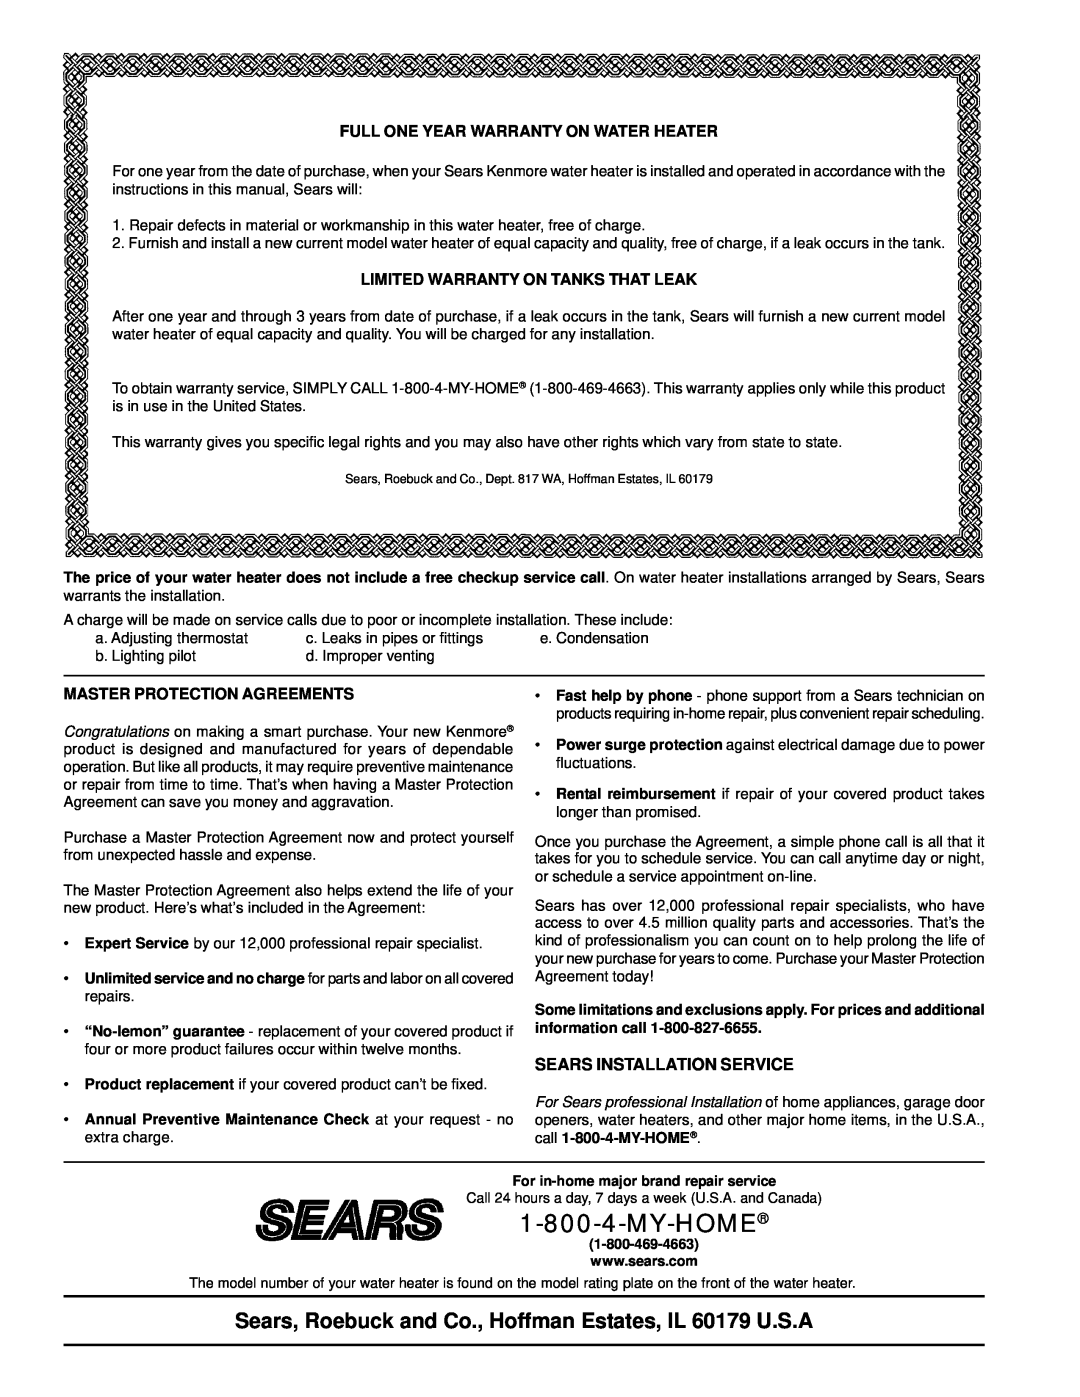 Kenmore 153.338003 Sears Installation Service, Full One Year Warranty On Water Heater, Limited Warranty On Tanks That Leak 